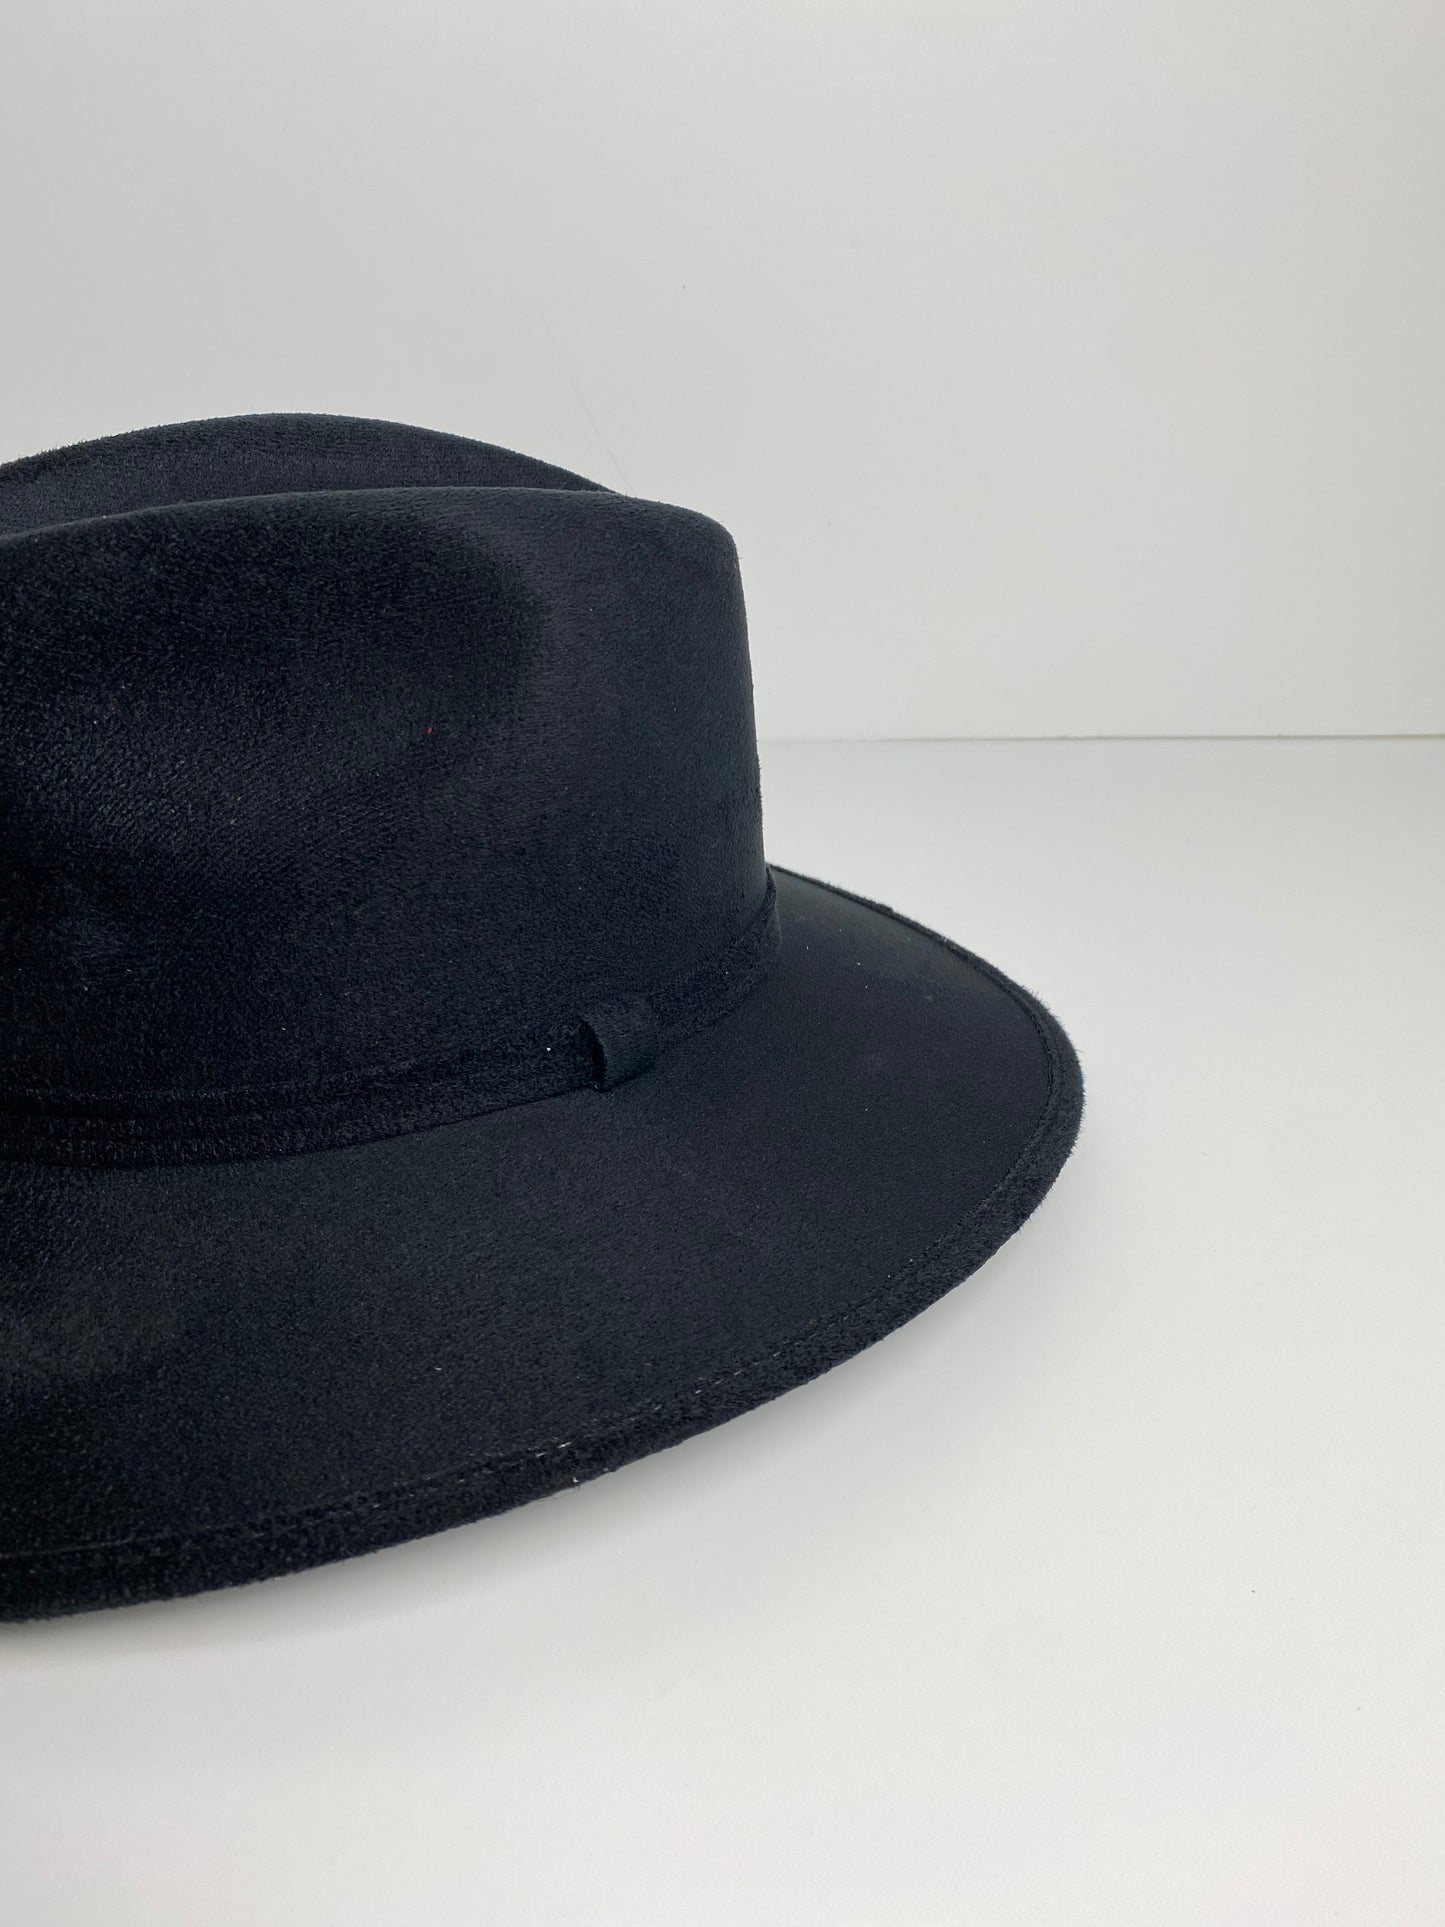 Vegan Suede Western Cowboy Hat- Black